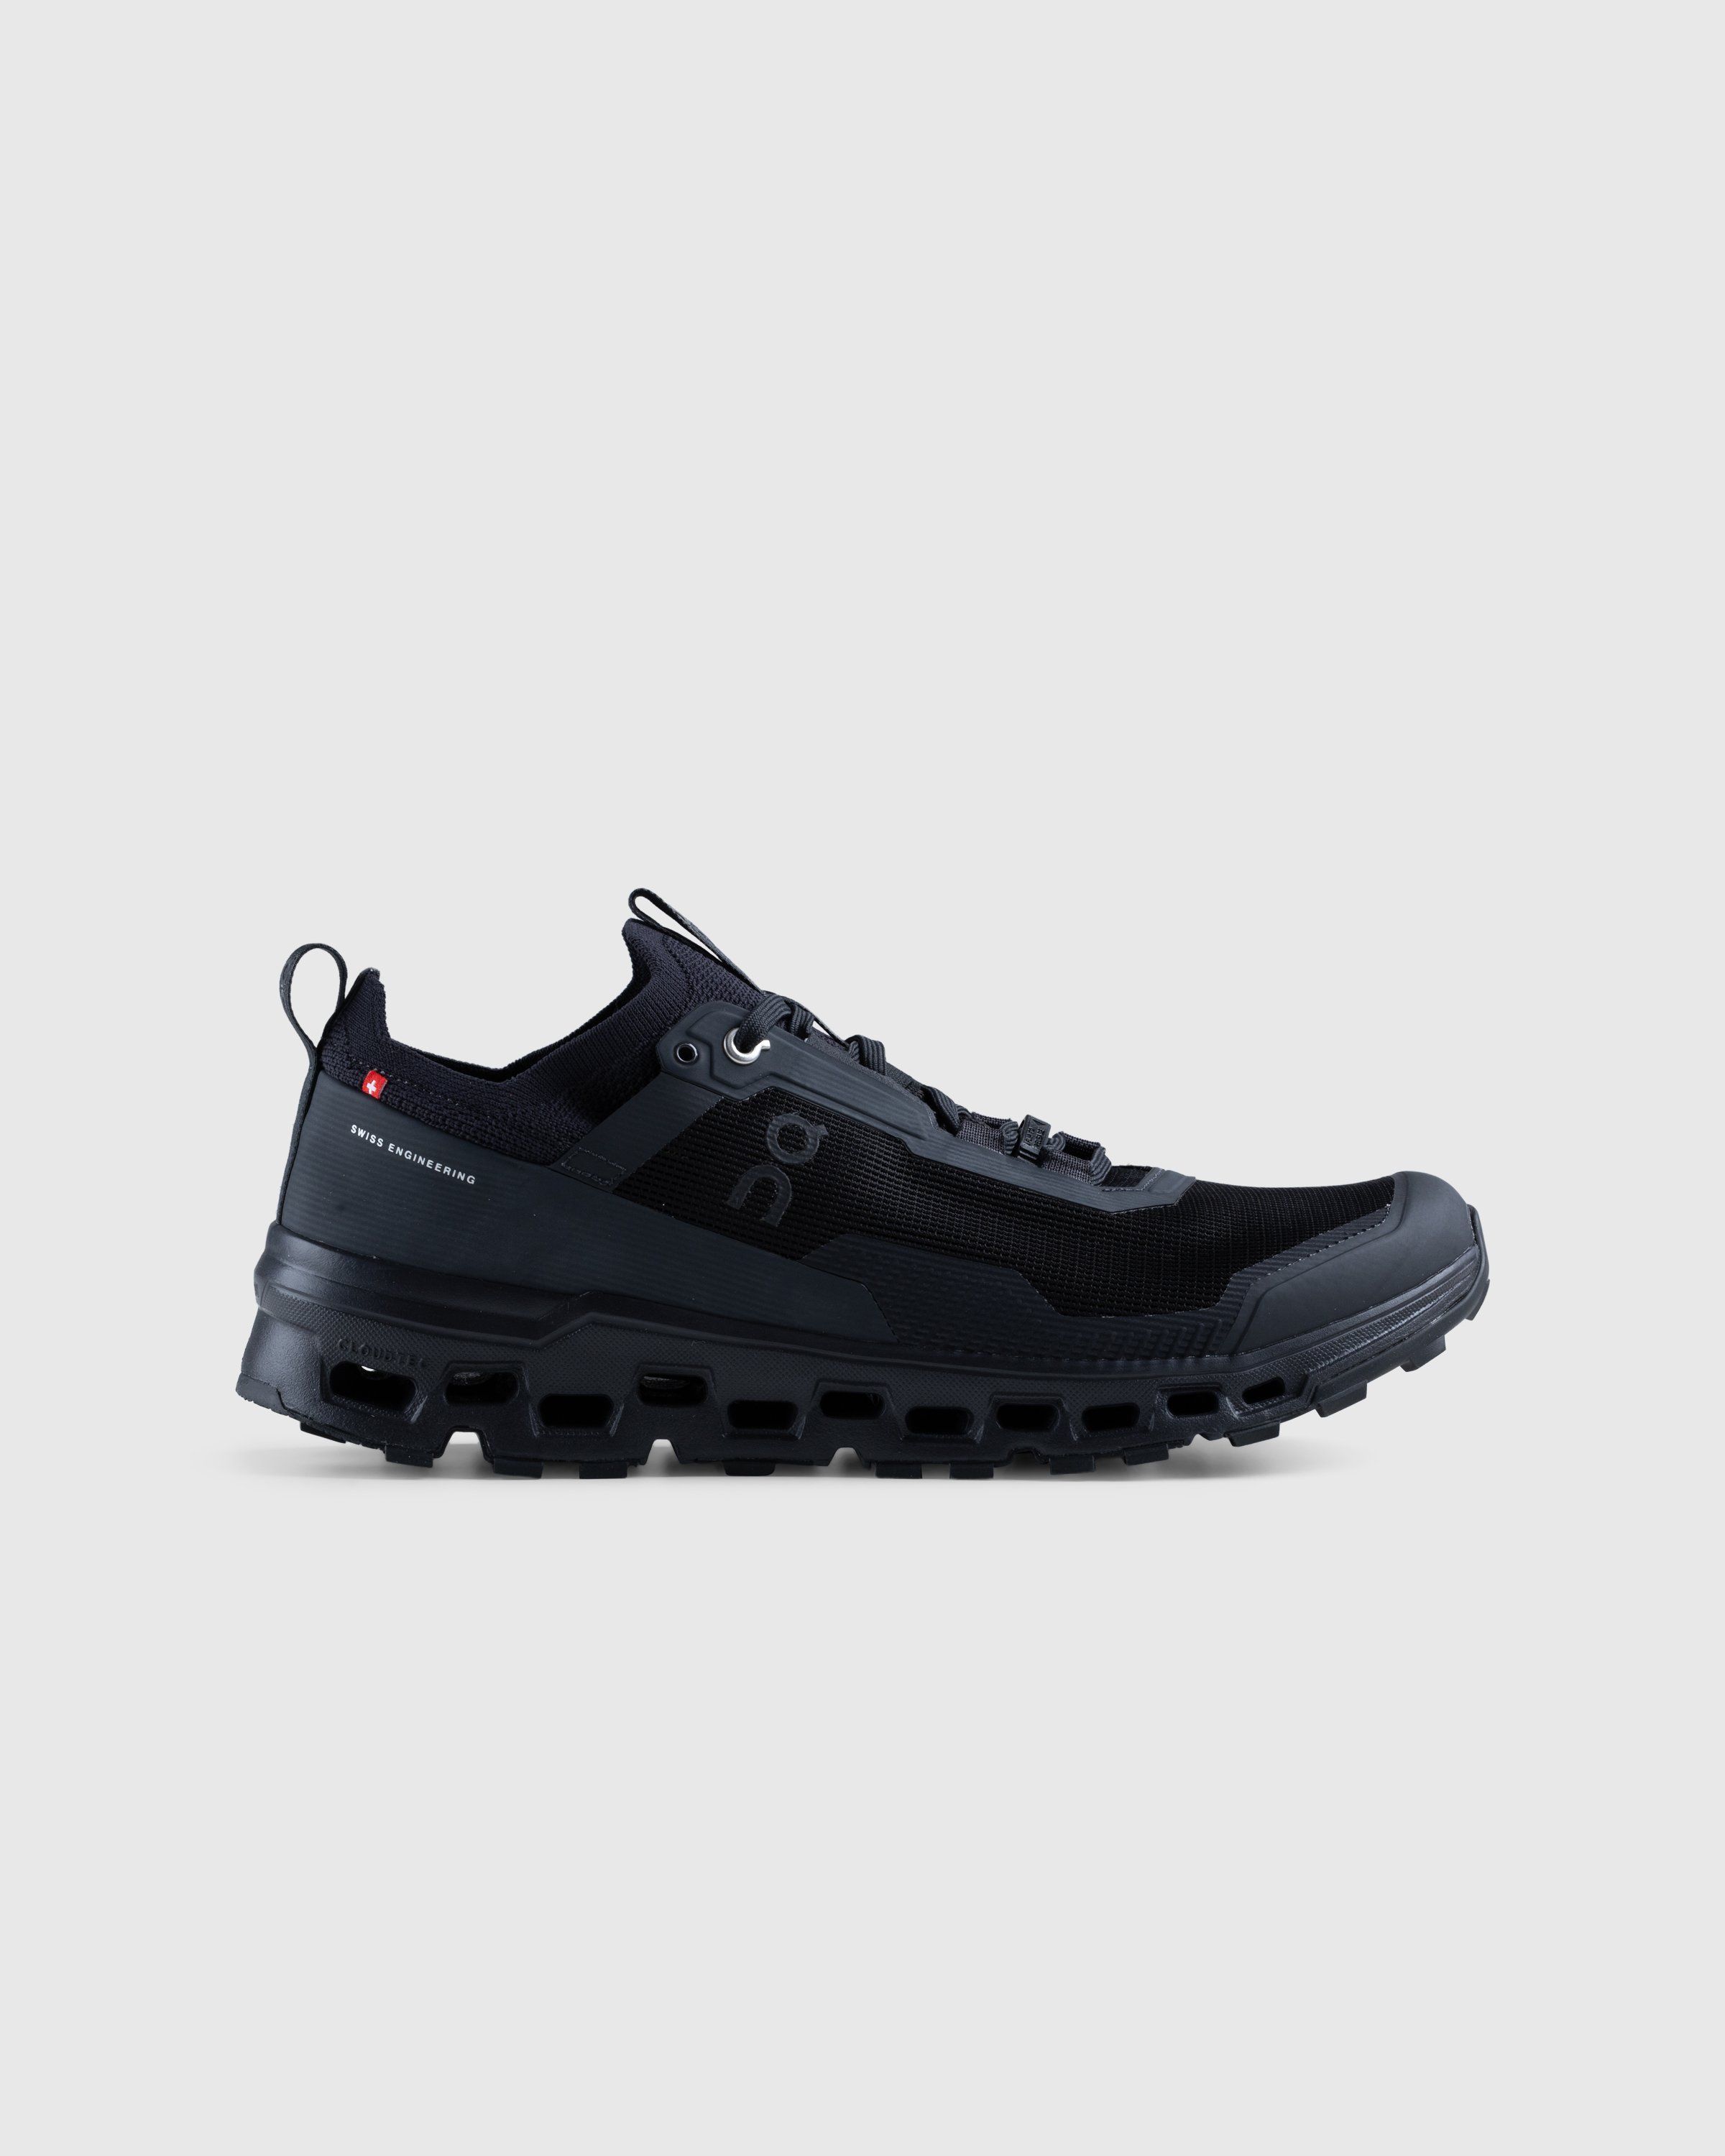 On - Cloudultra 2 Black - Footwear - Black - Image 1